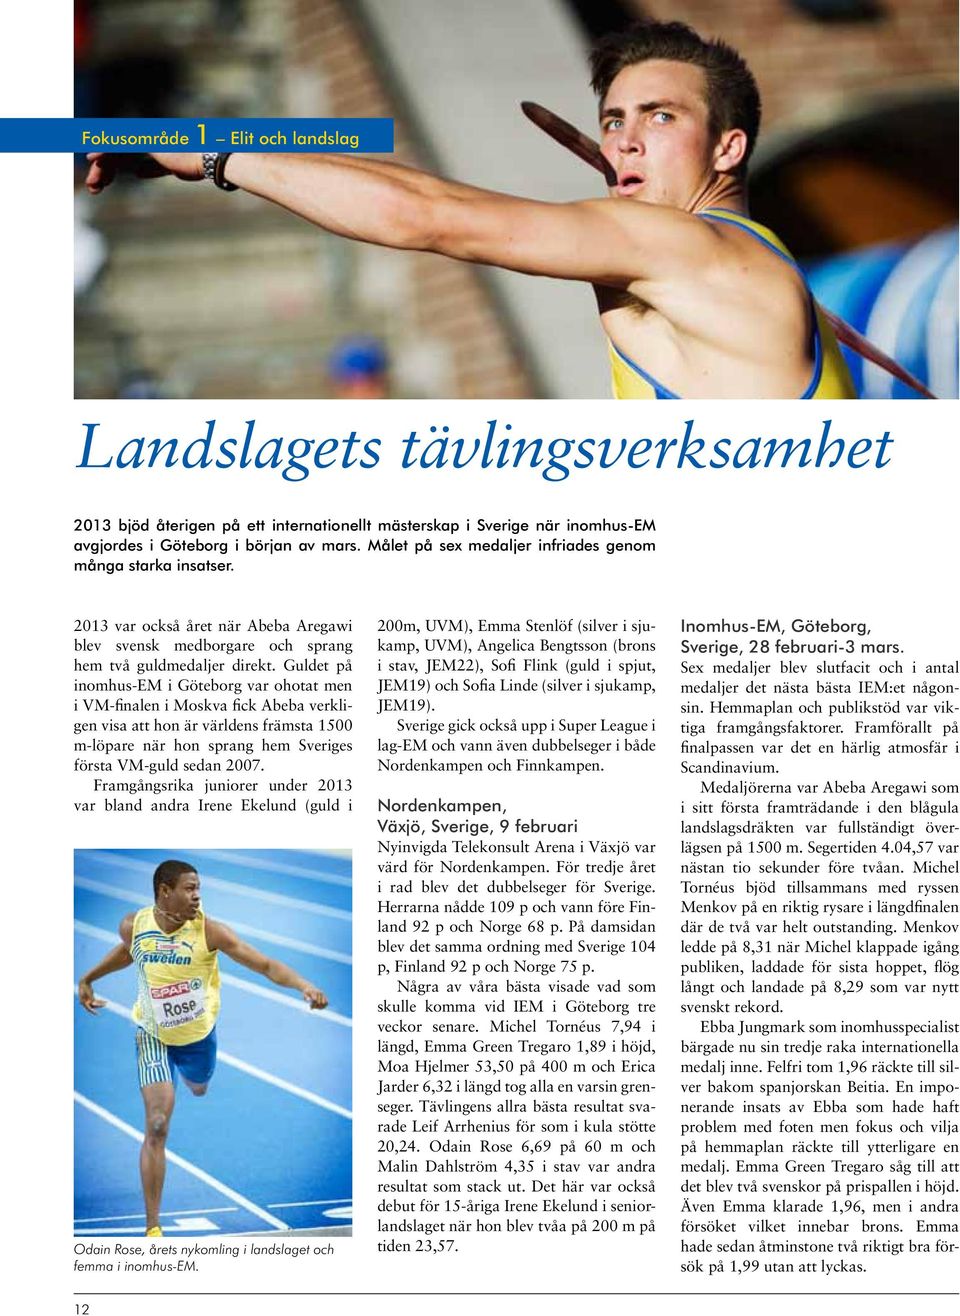 Guldet på inomhus-em i Göteborg var ohotat men i VM-finalen i Moskva fick Abeba verkligen visa att hon är världens främsta 1500 m-löpare när hon sprang hem Sveriges första VM-guld sedan 2007.